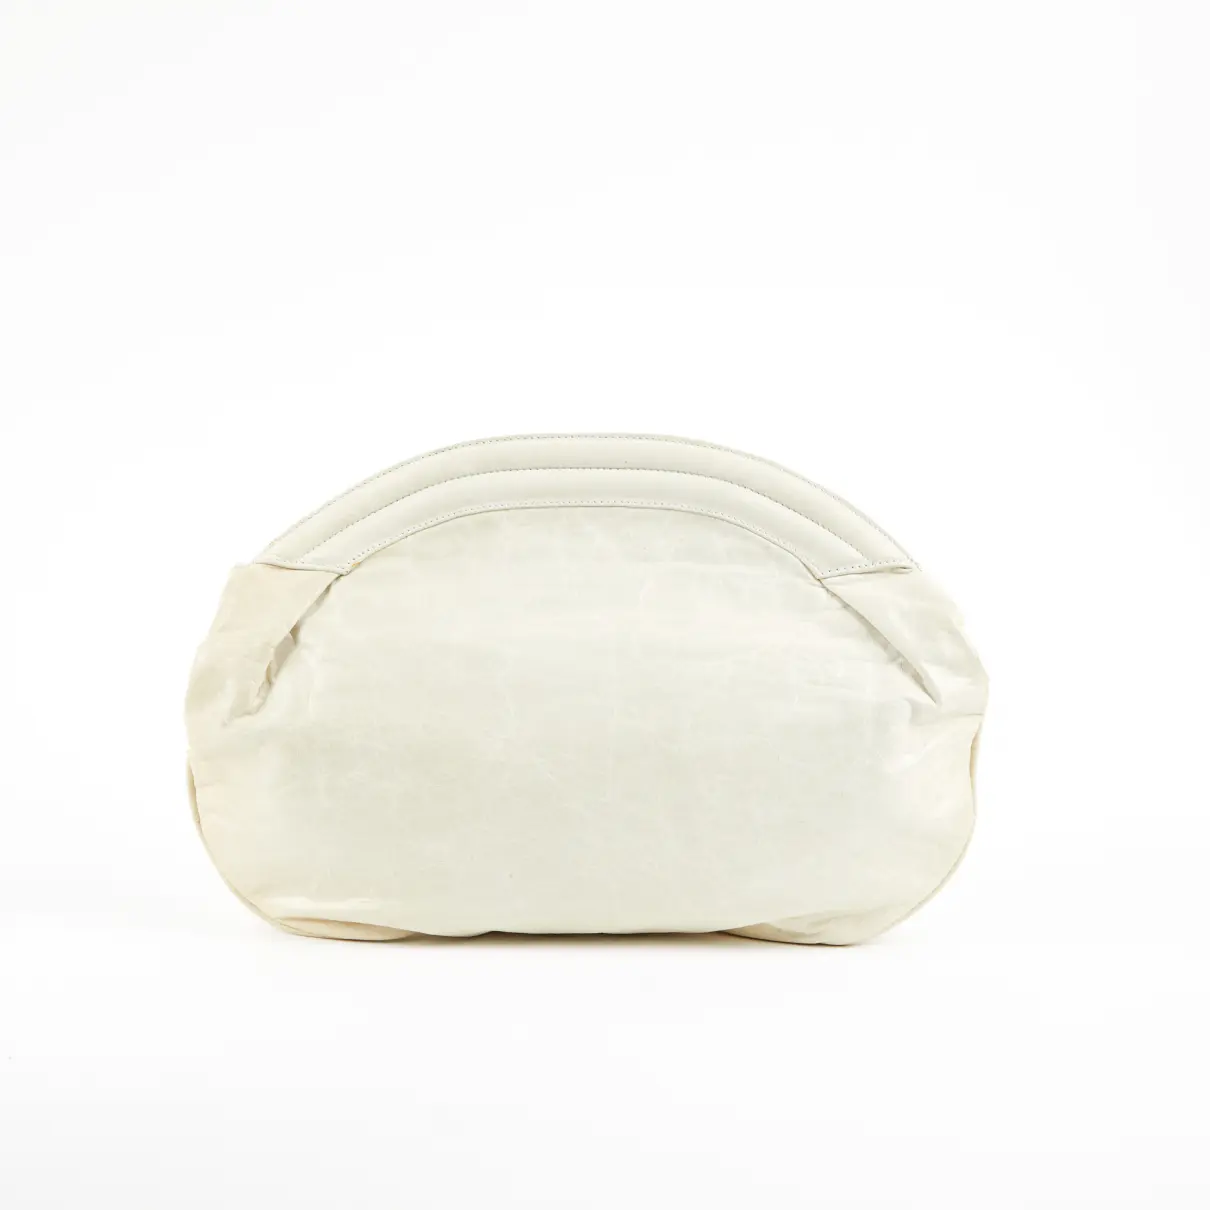 Luxury Balenciaga Clutch bags Women